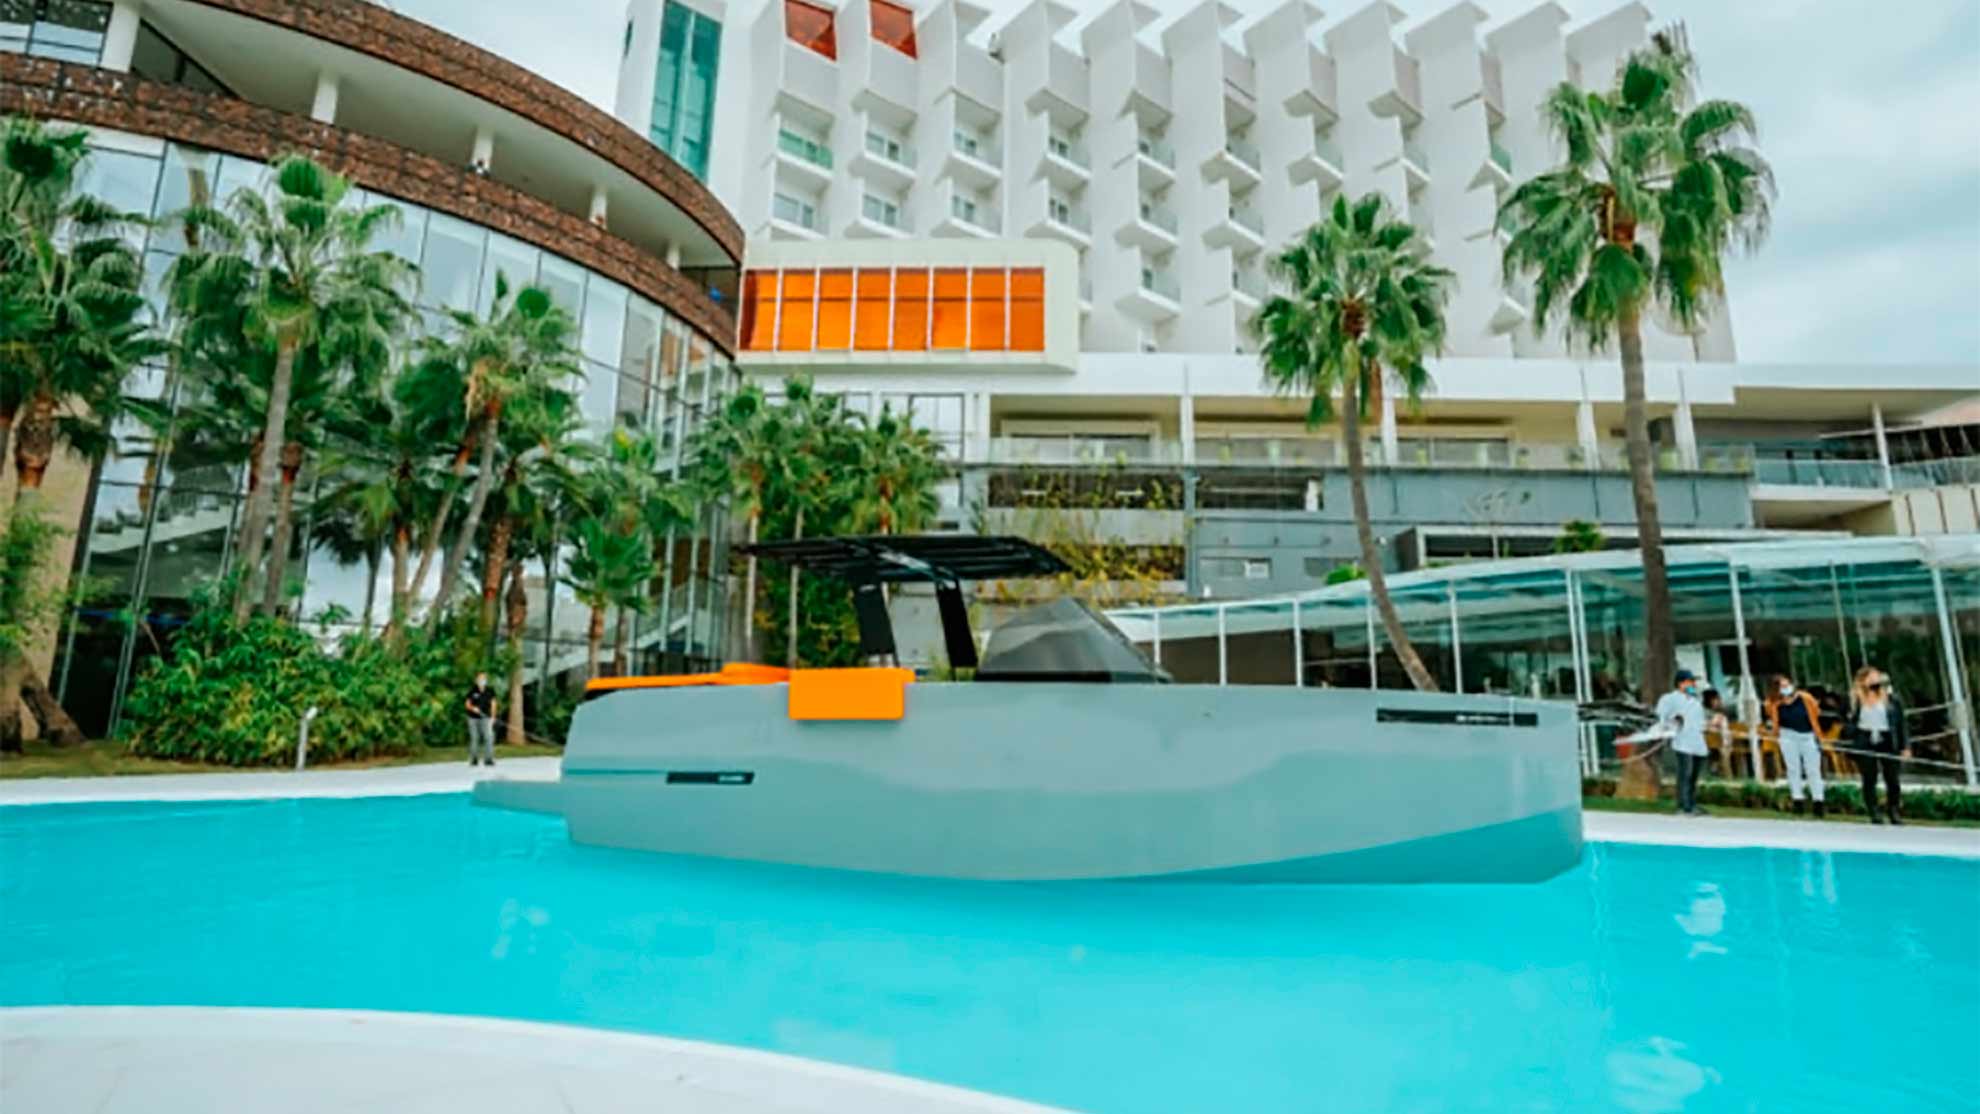 Atracan un yate en la piscina de un hotel (+VÍDEO)